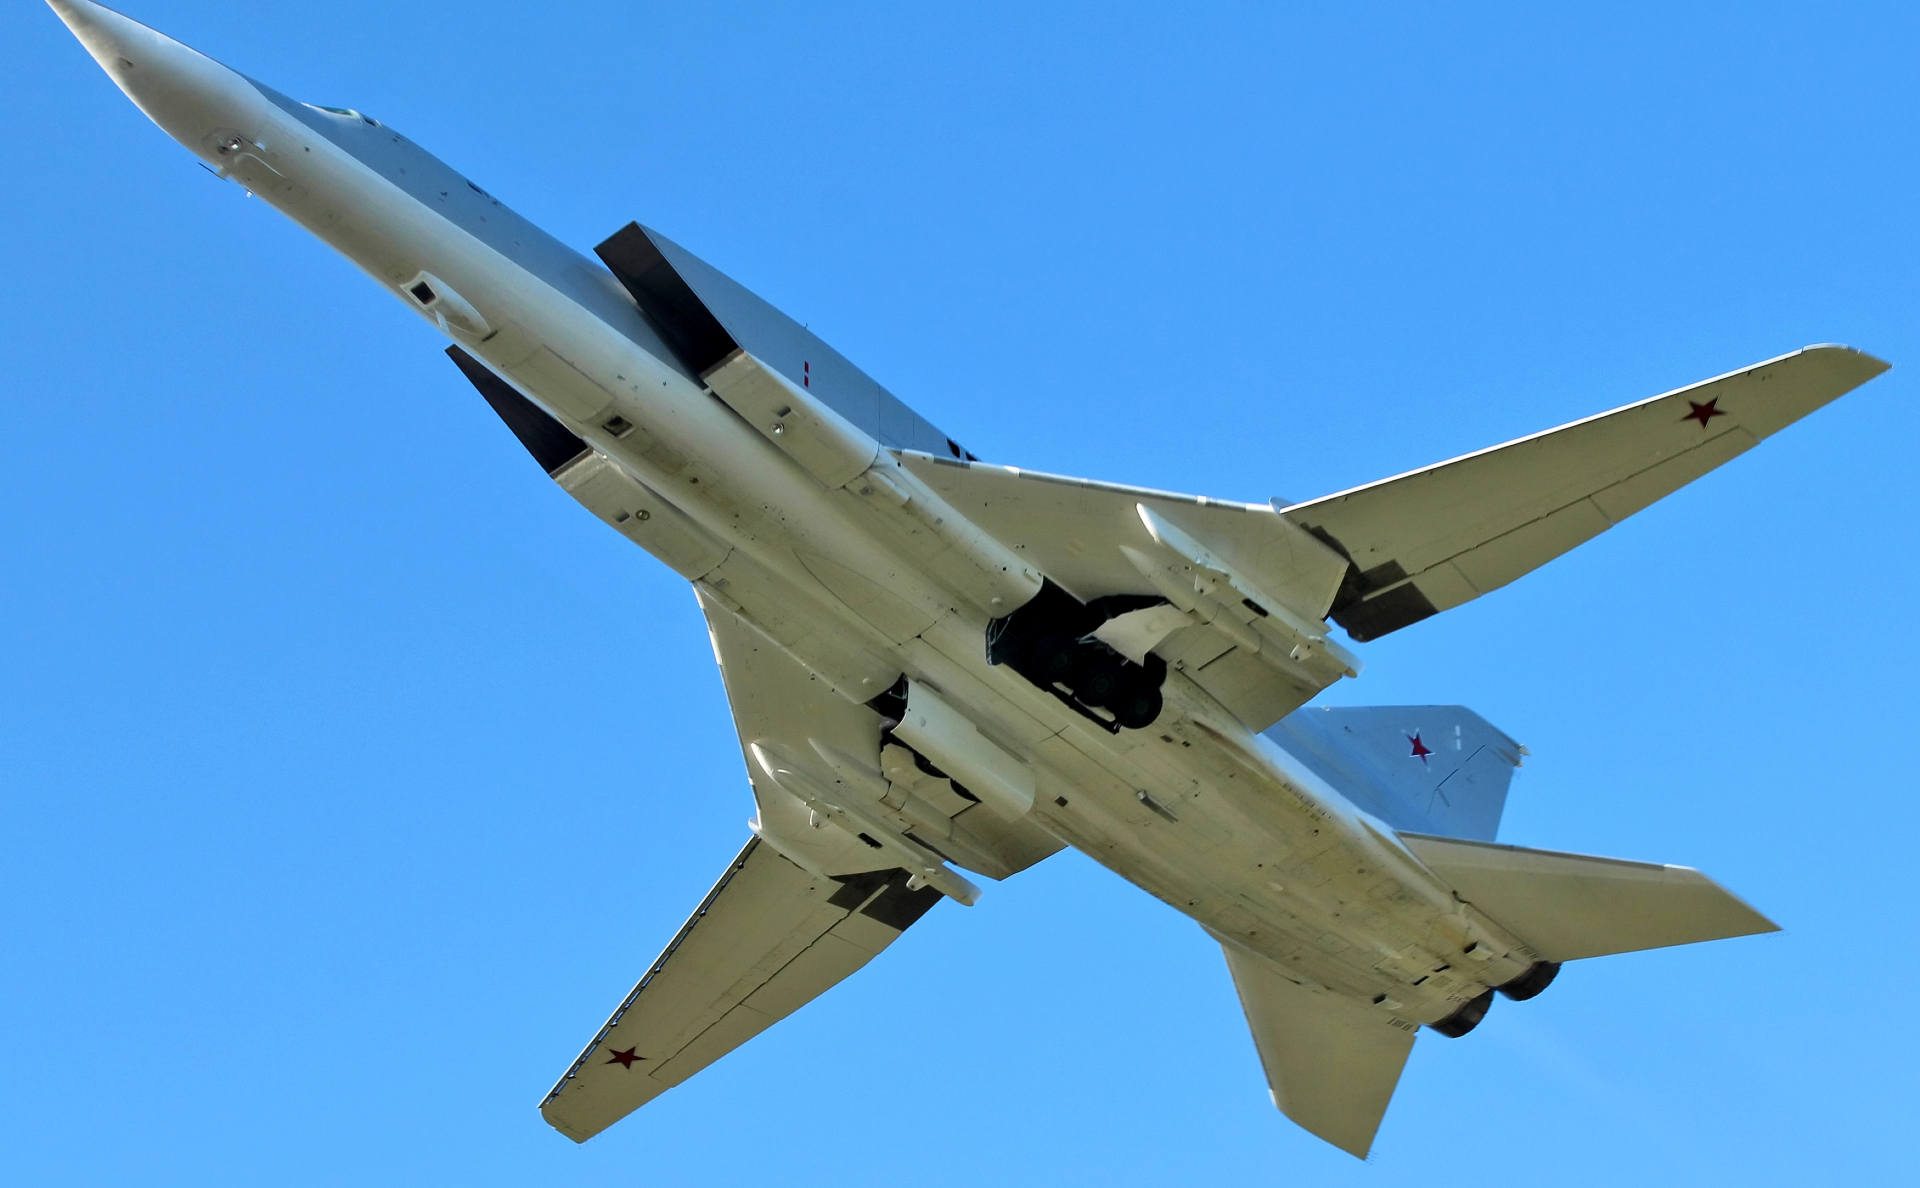 Дальний сверхзвуковой бомбардировщик-ракетоносец Ту-22М3